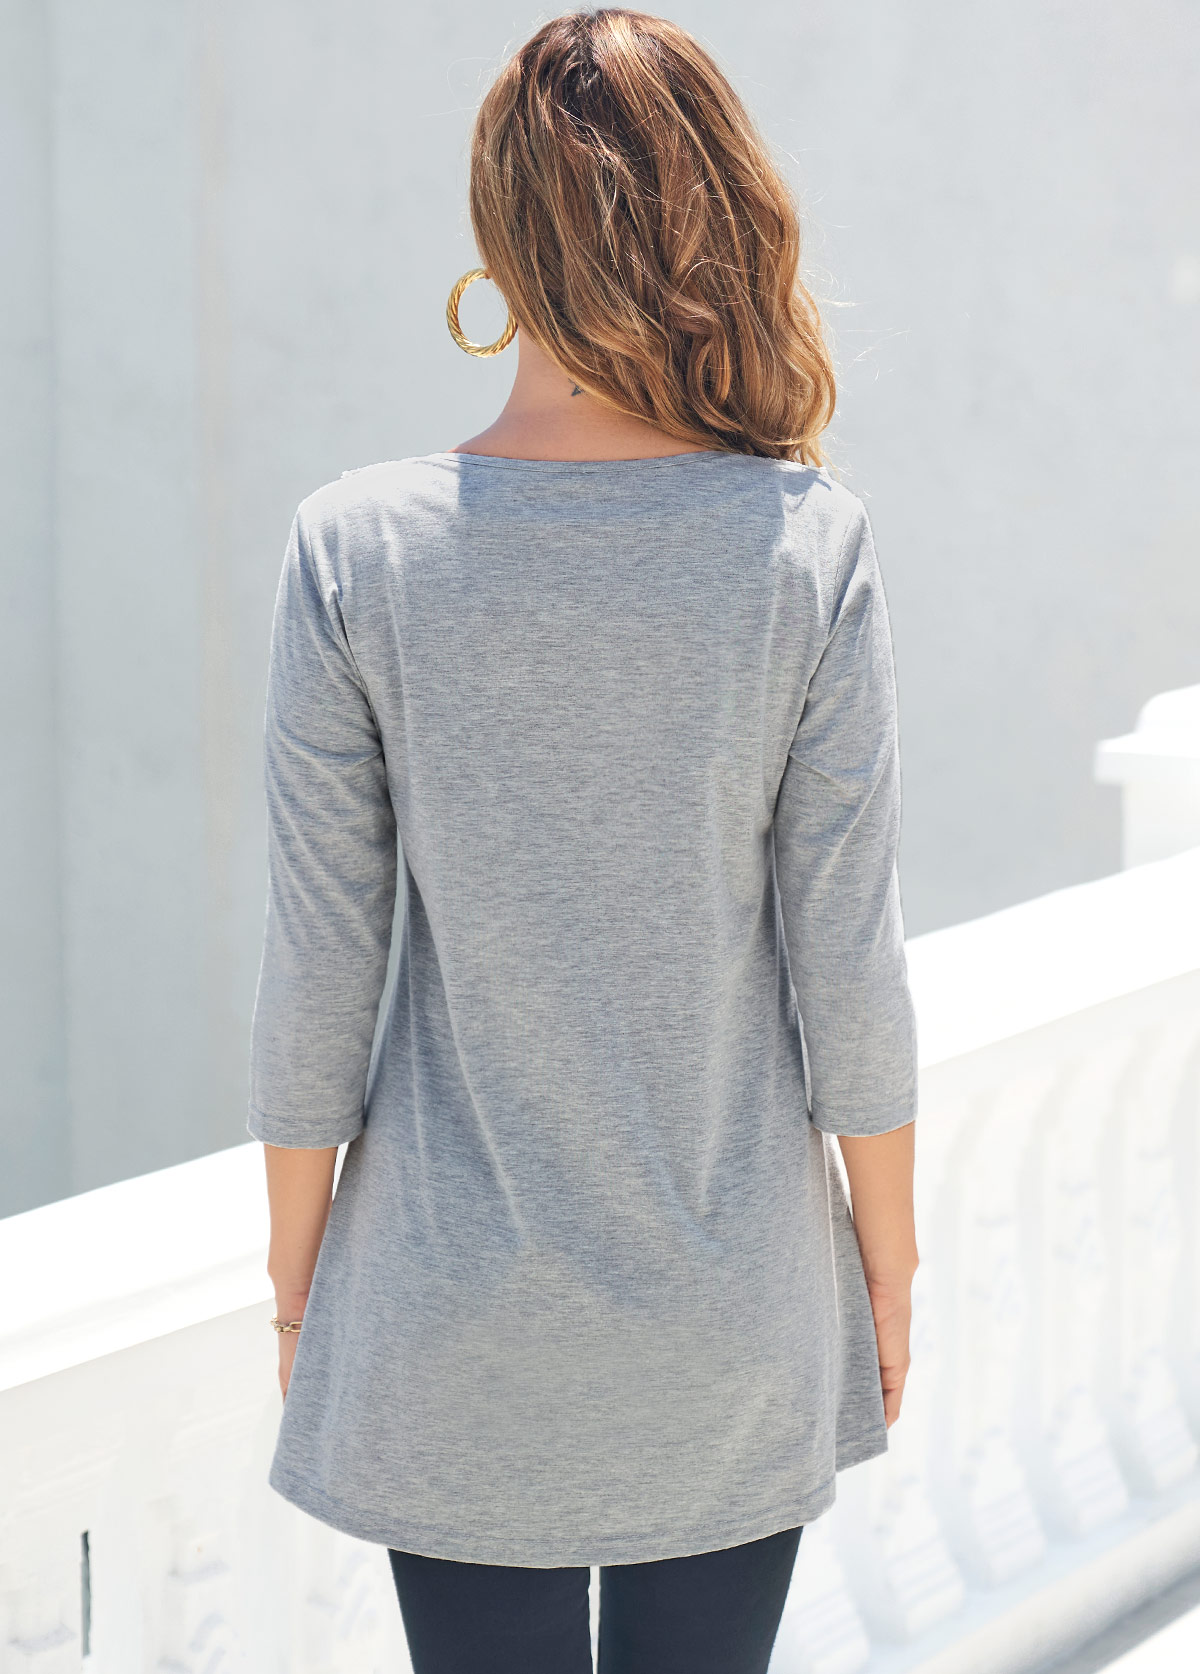 Lace Stitching Grey 3/4 Sleeve T Shirt